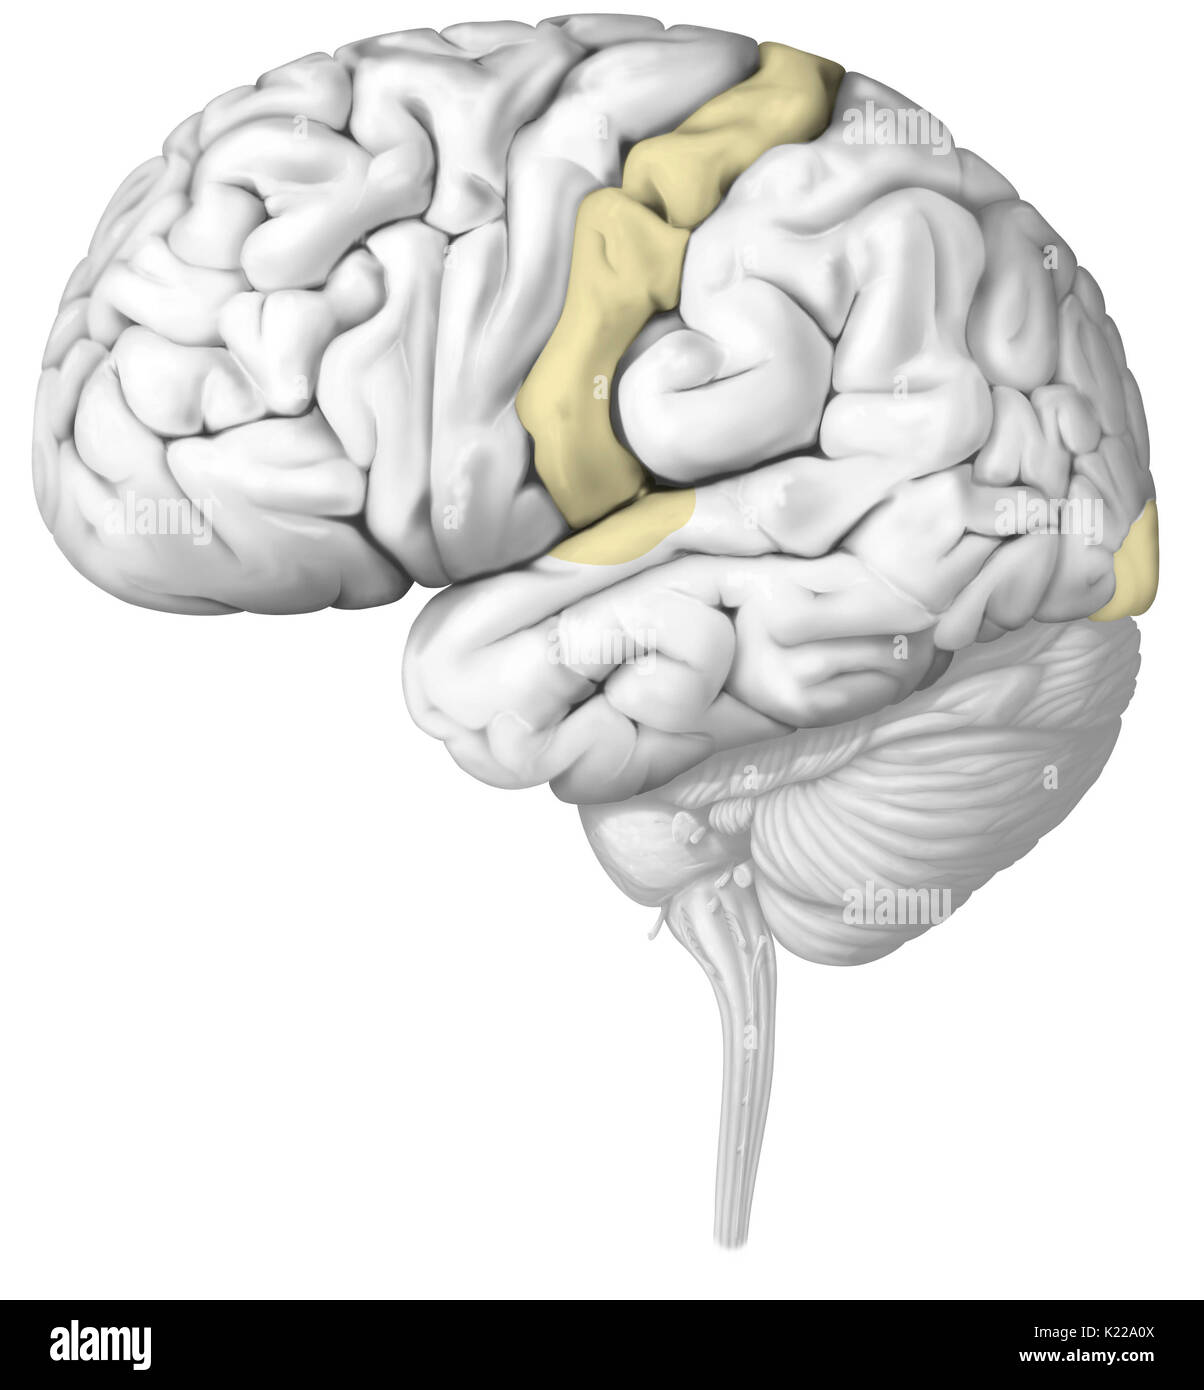 Die nervenimpulse sind in den Zonen des Gehirns, die spezifisch für jeden Sinn analysiert. Verletzung eines Sinnesorgans kann ernsthaft sein Funktionieren beeinträchtigen. Stockfoto